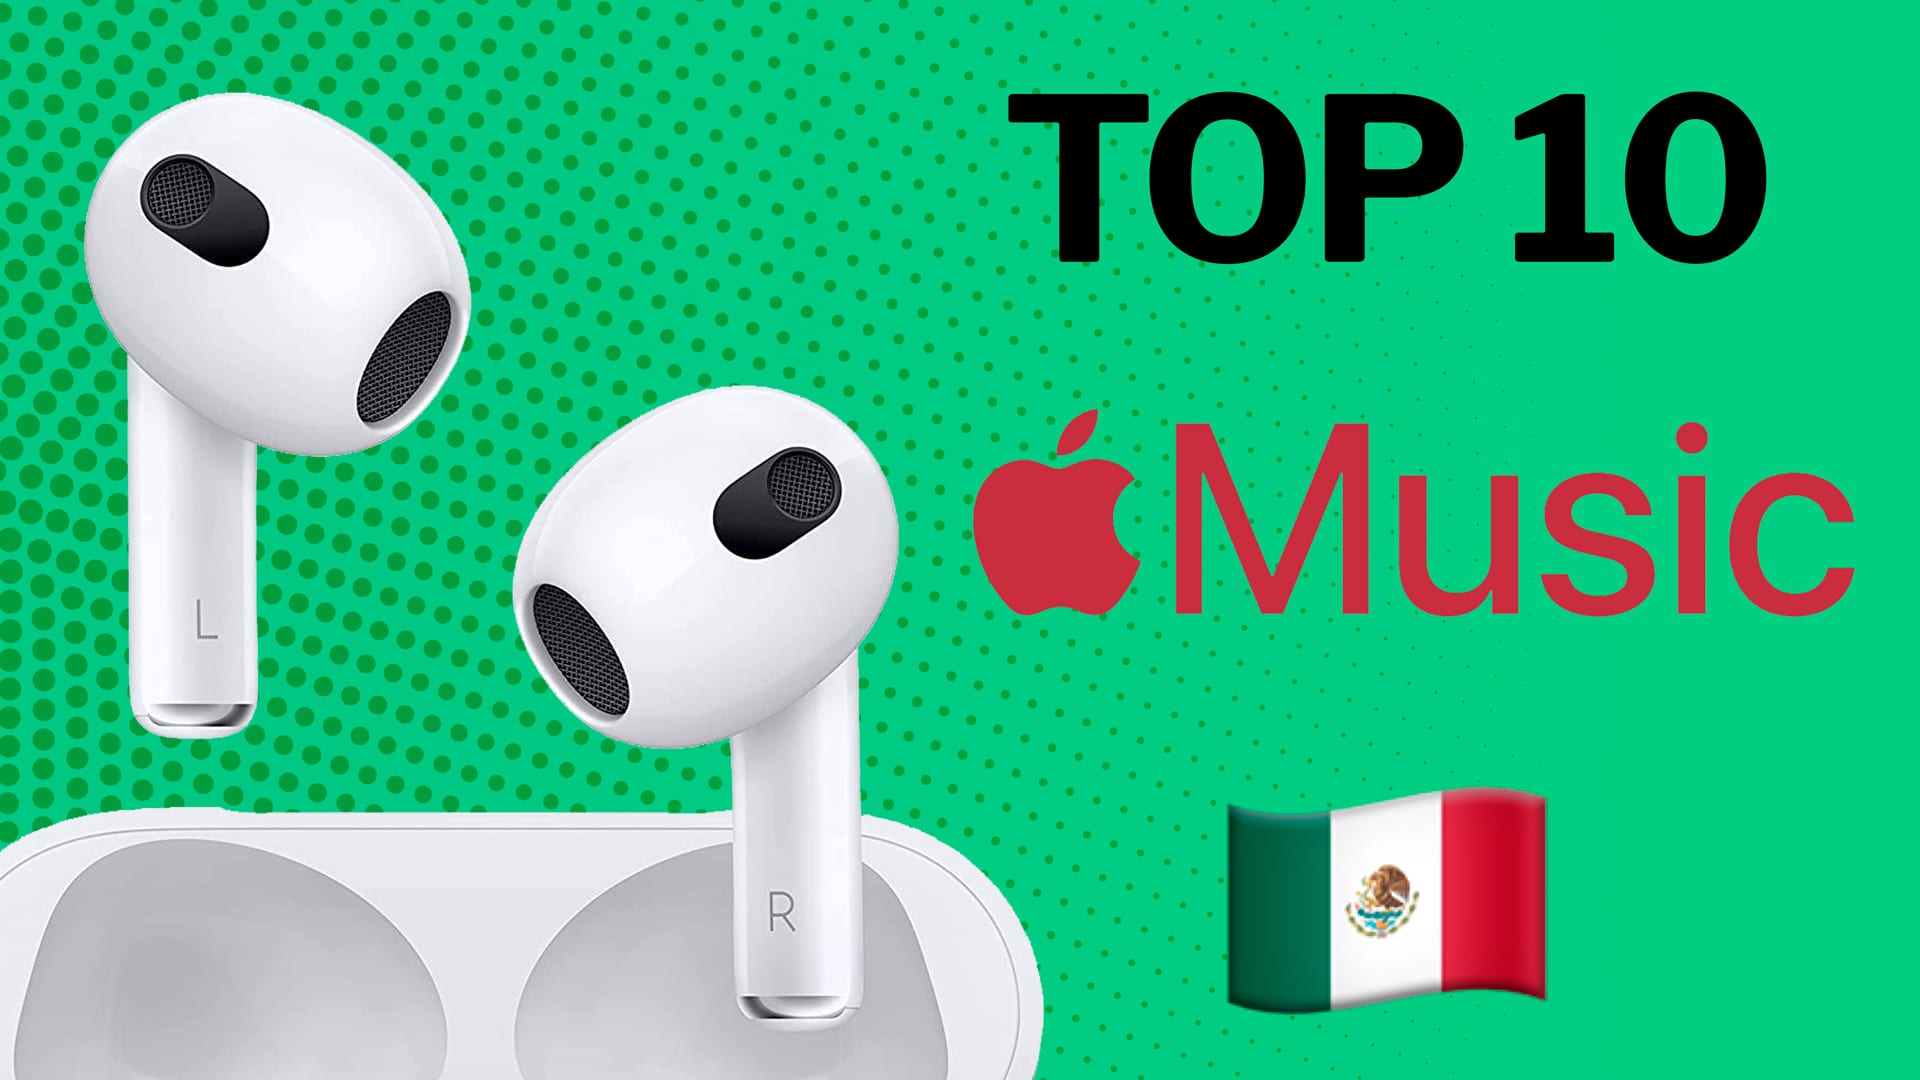 Cuál es la canción más reproducida en Apple México hoy